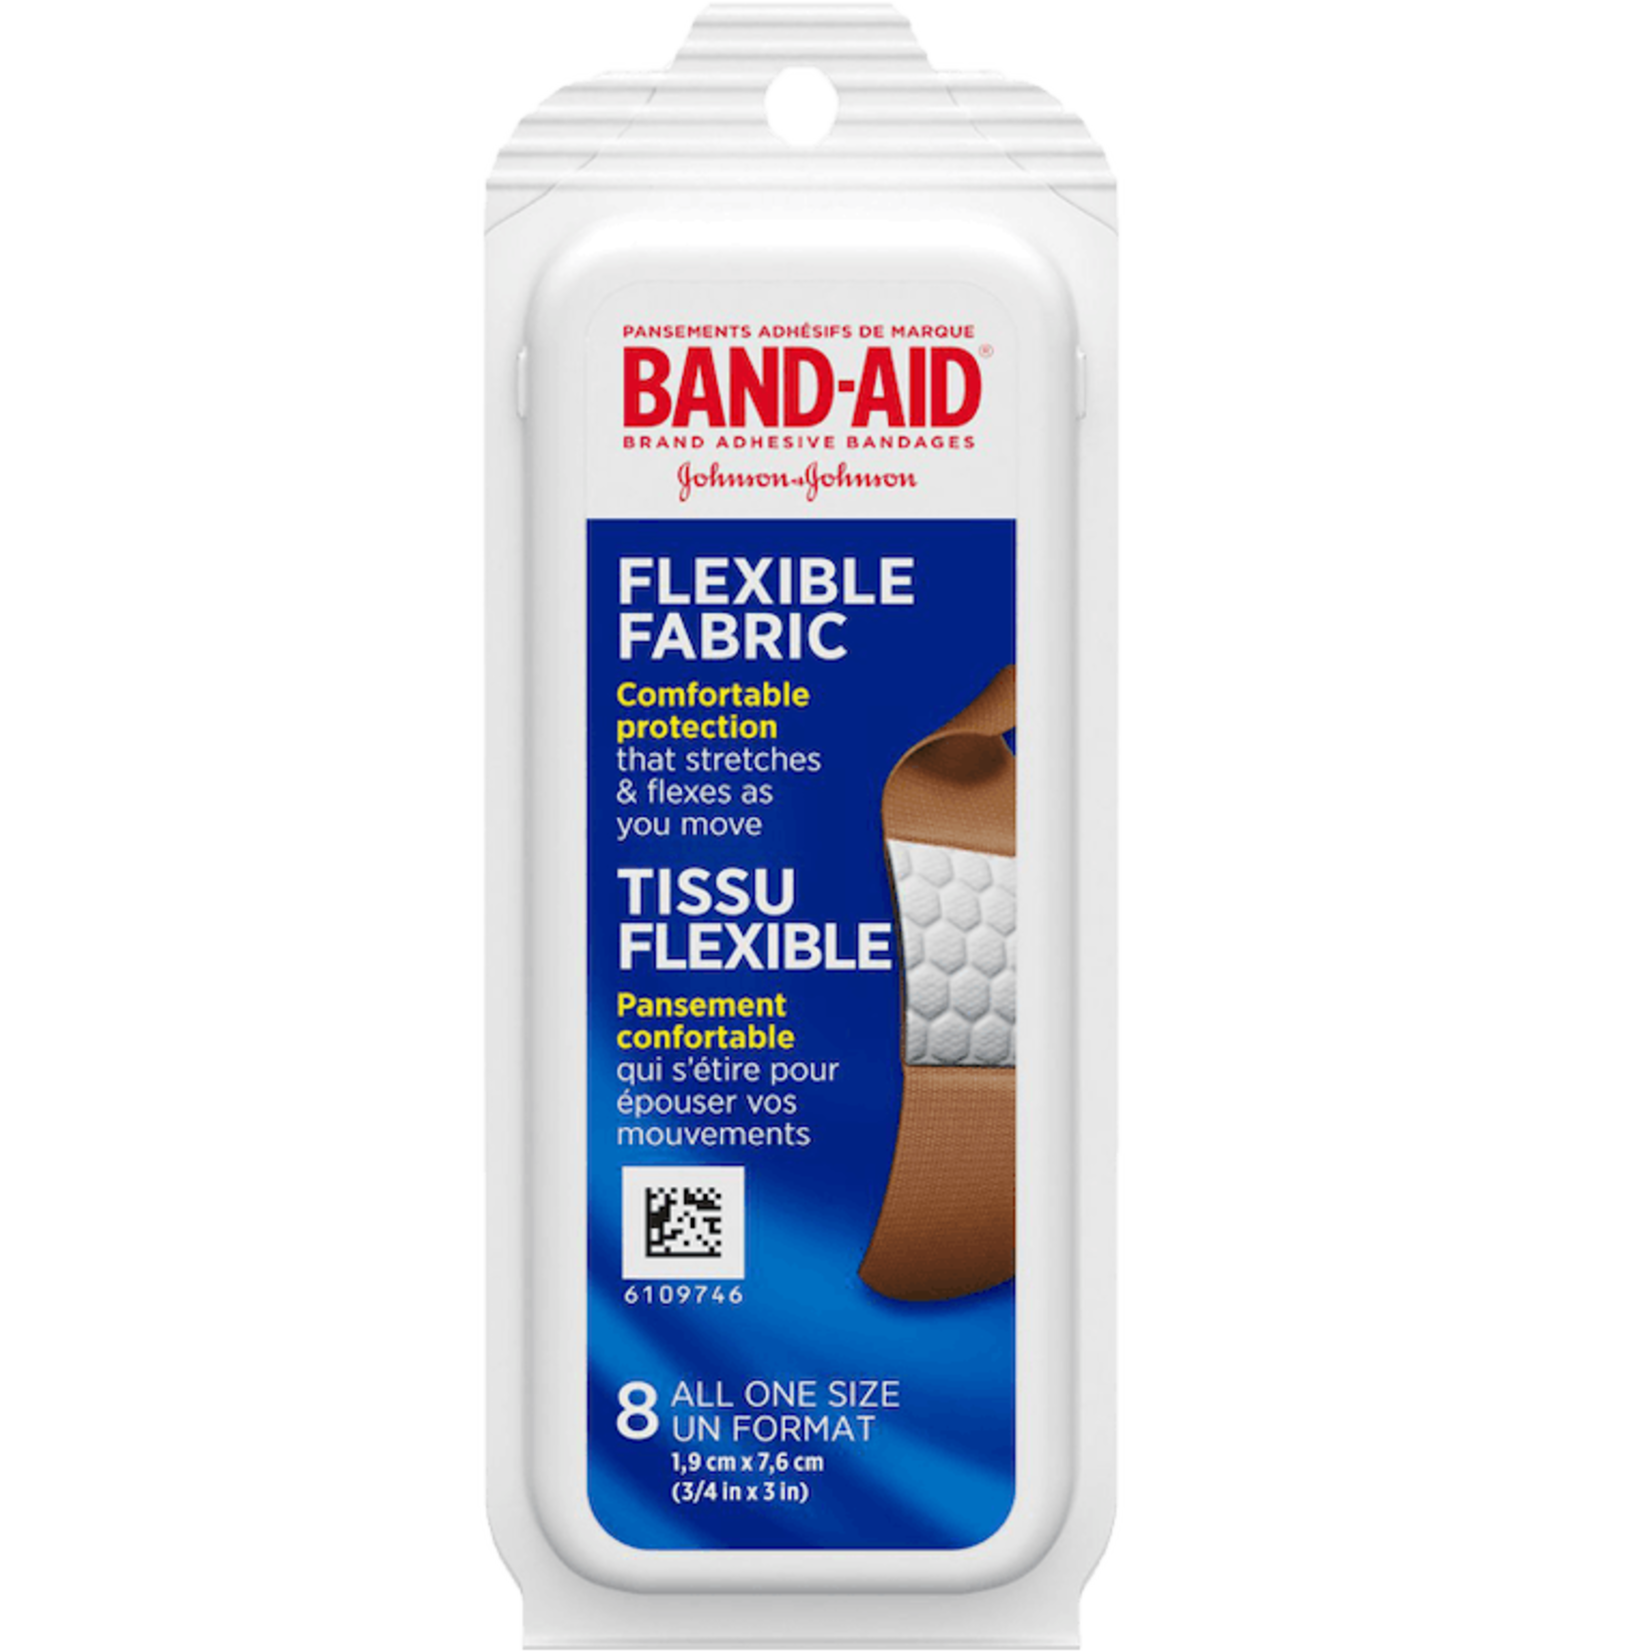 Band-Aid Flex Fabric Bandages - 8 Pack